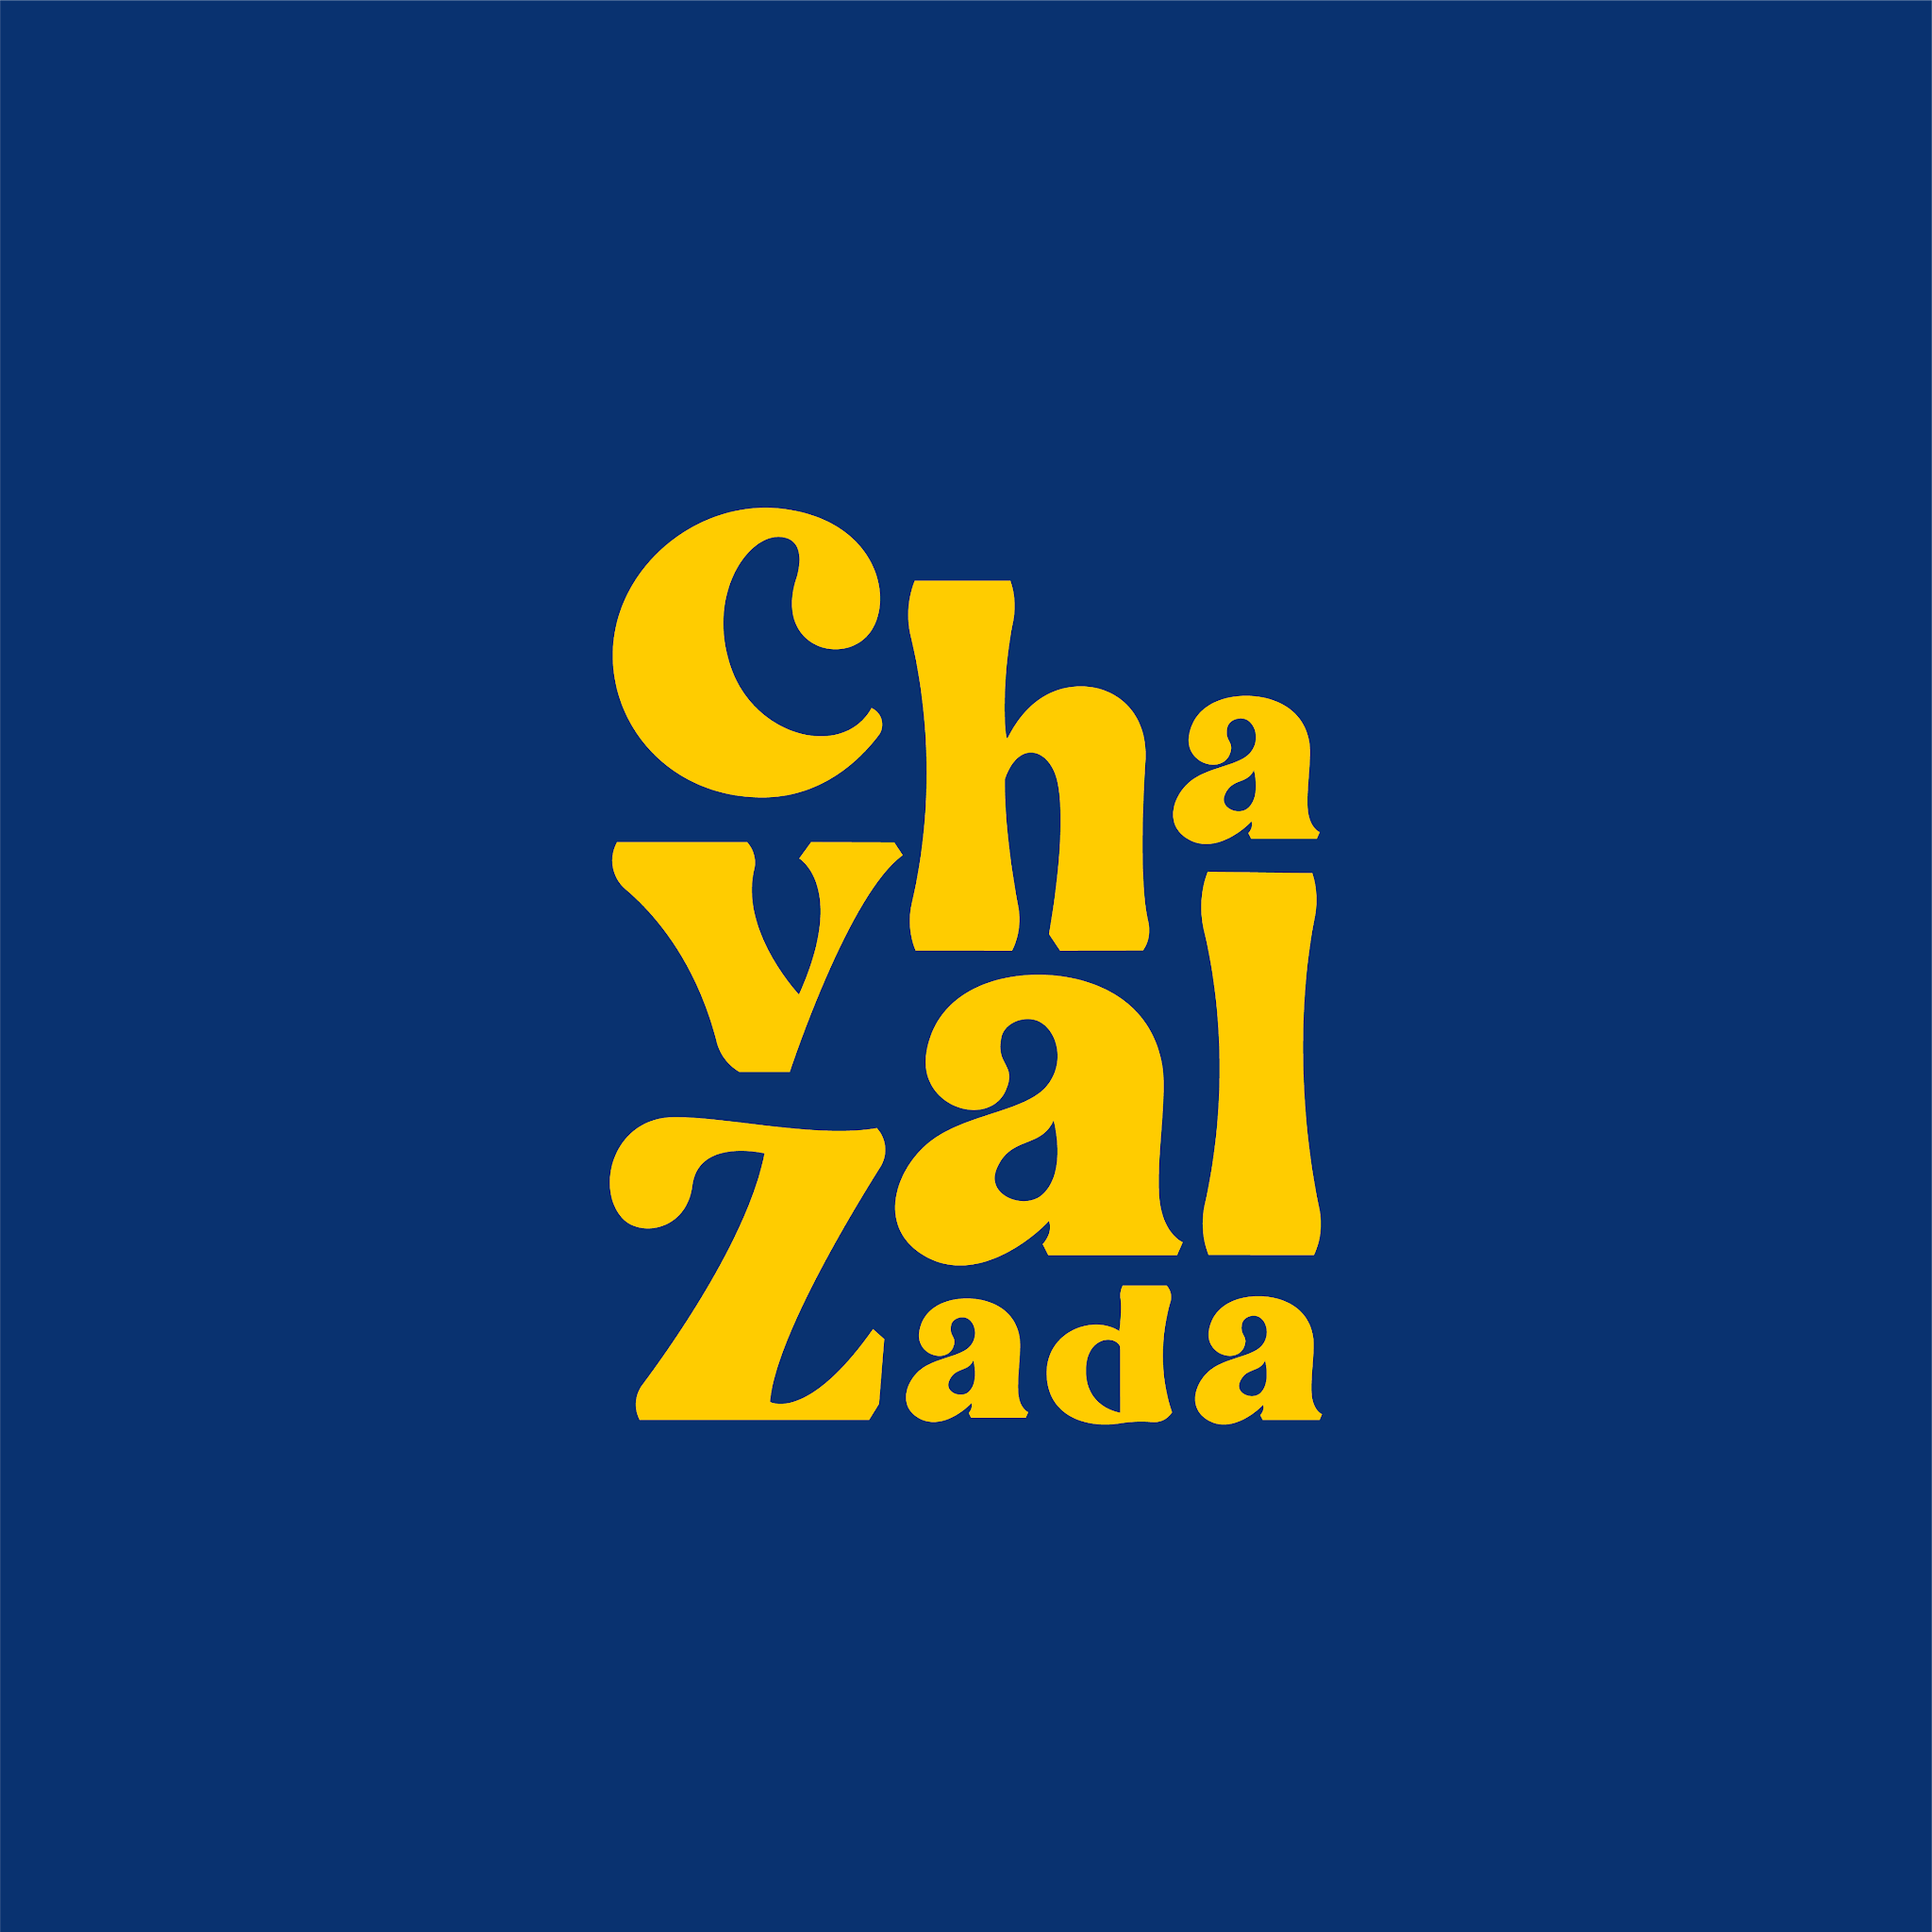 Chavalzada